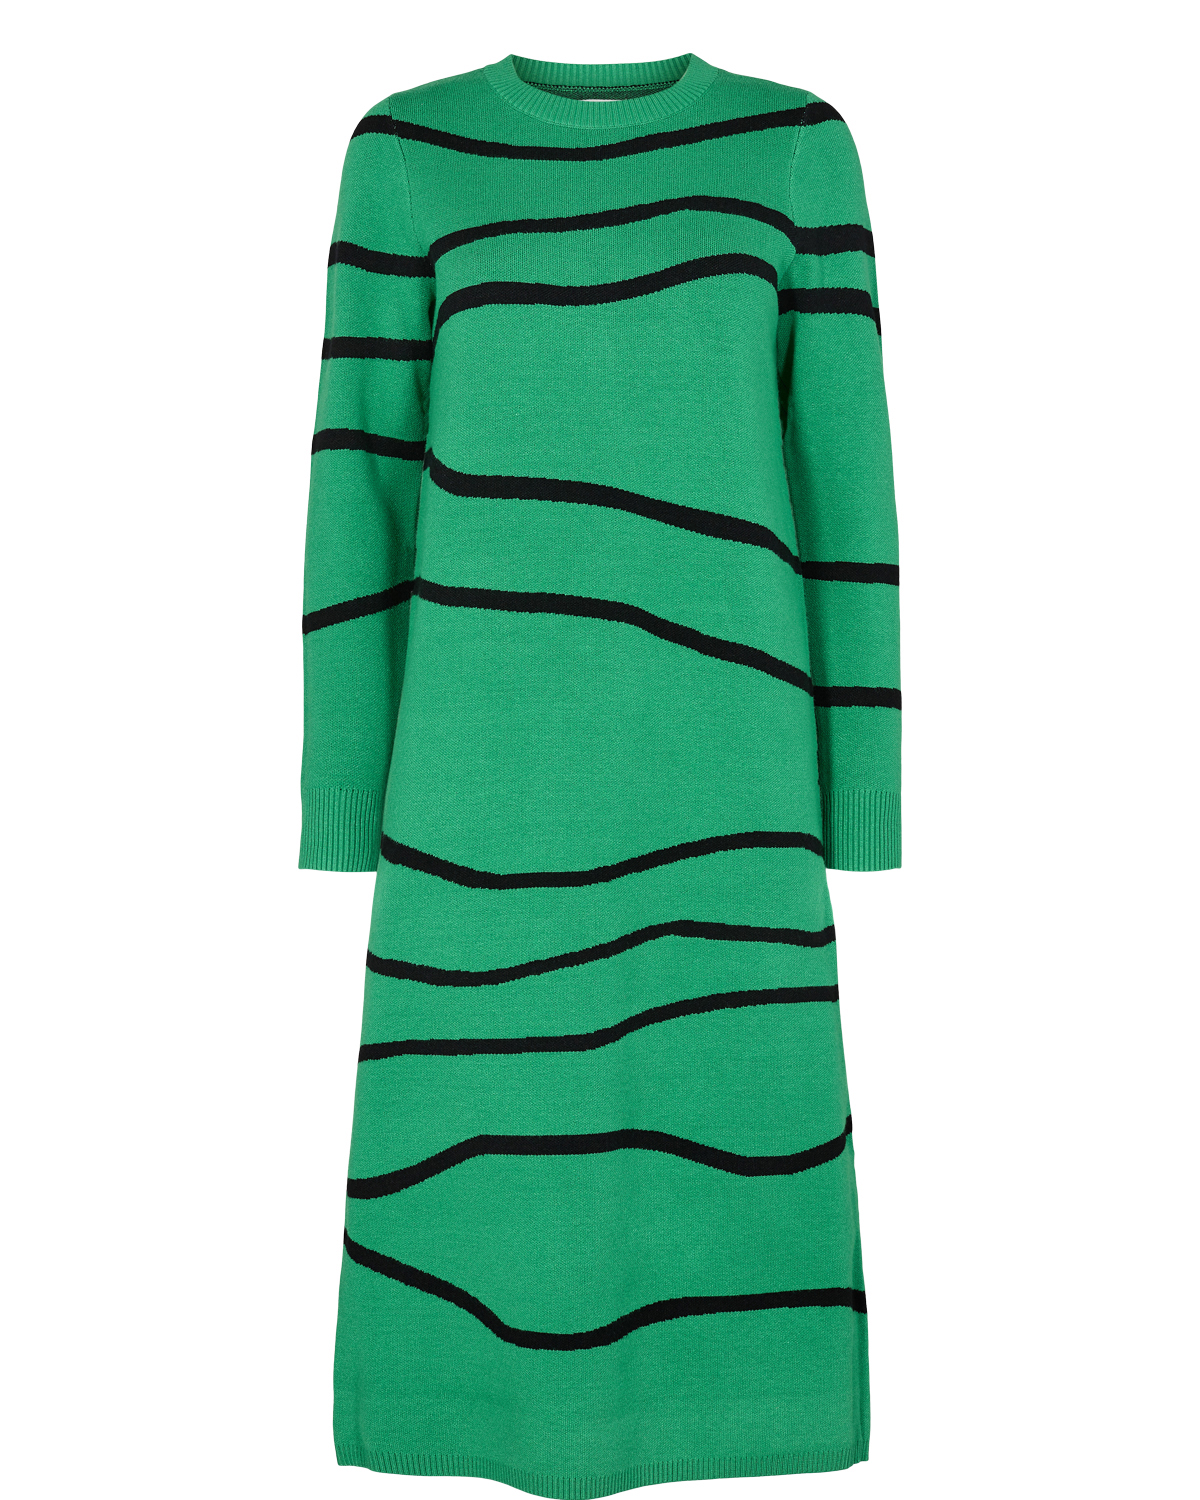 Nümph Elita Dress, stripet strikkekjole, grønn/sort